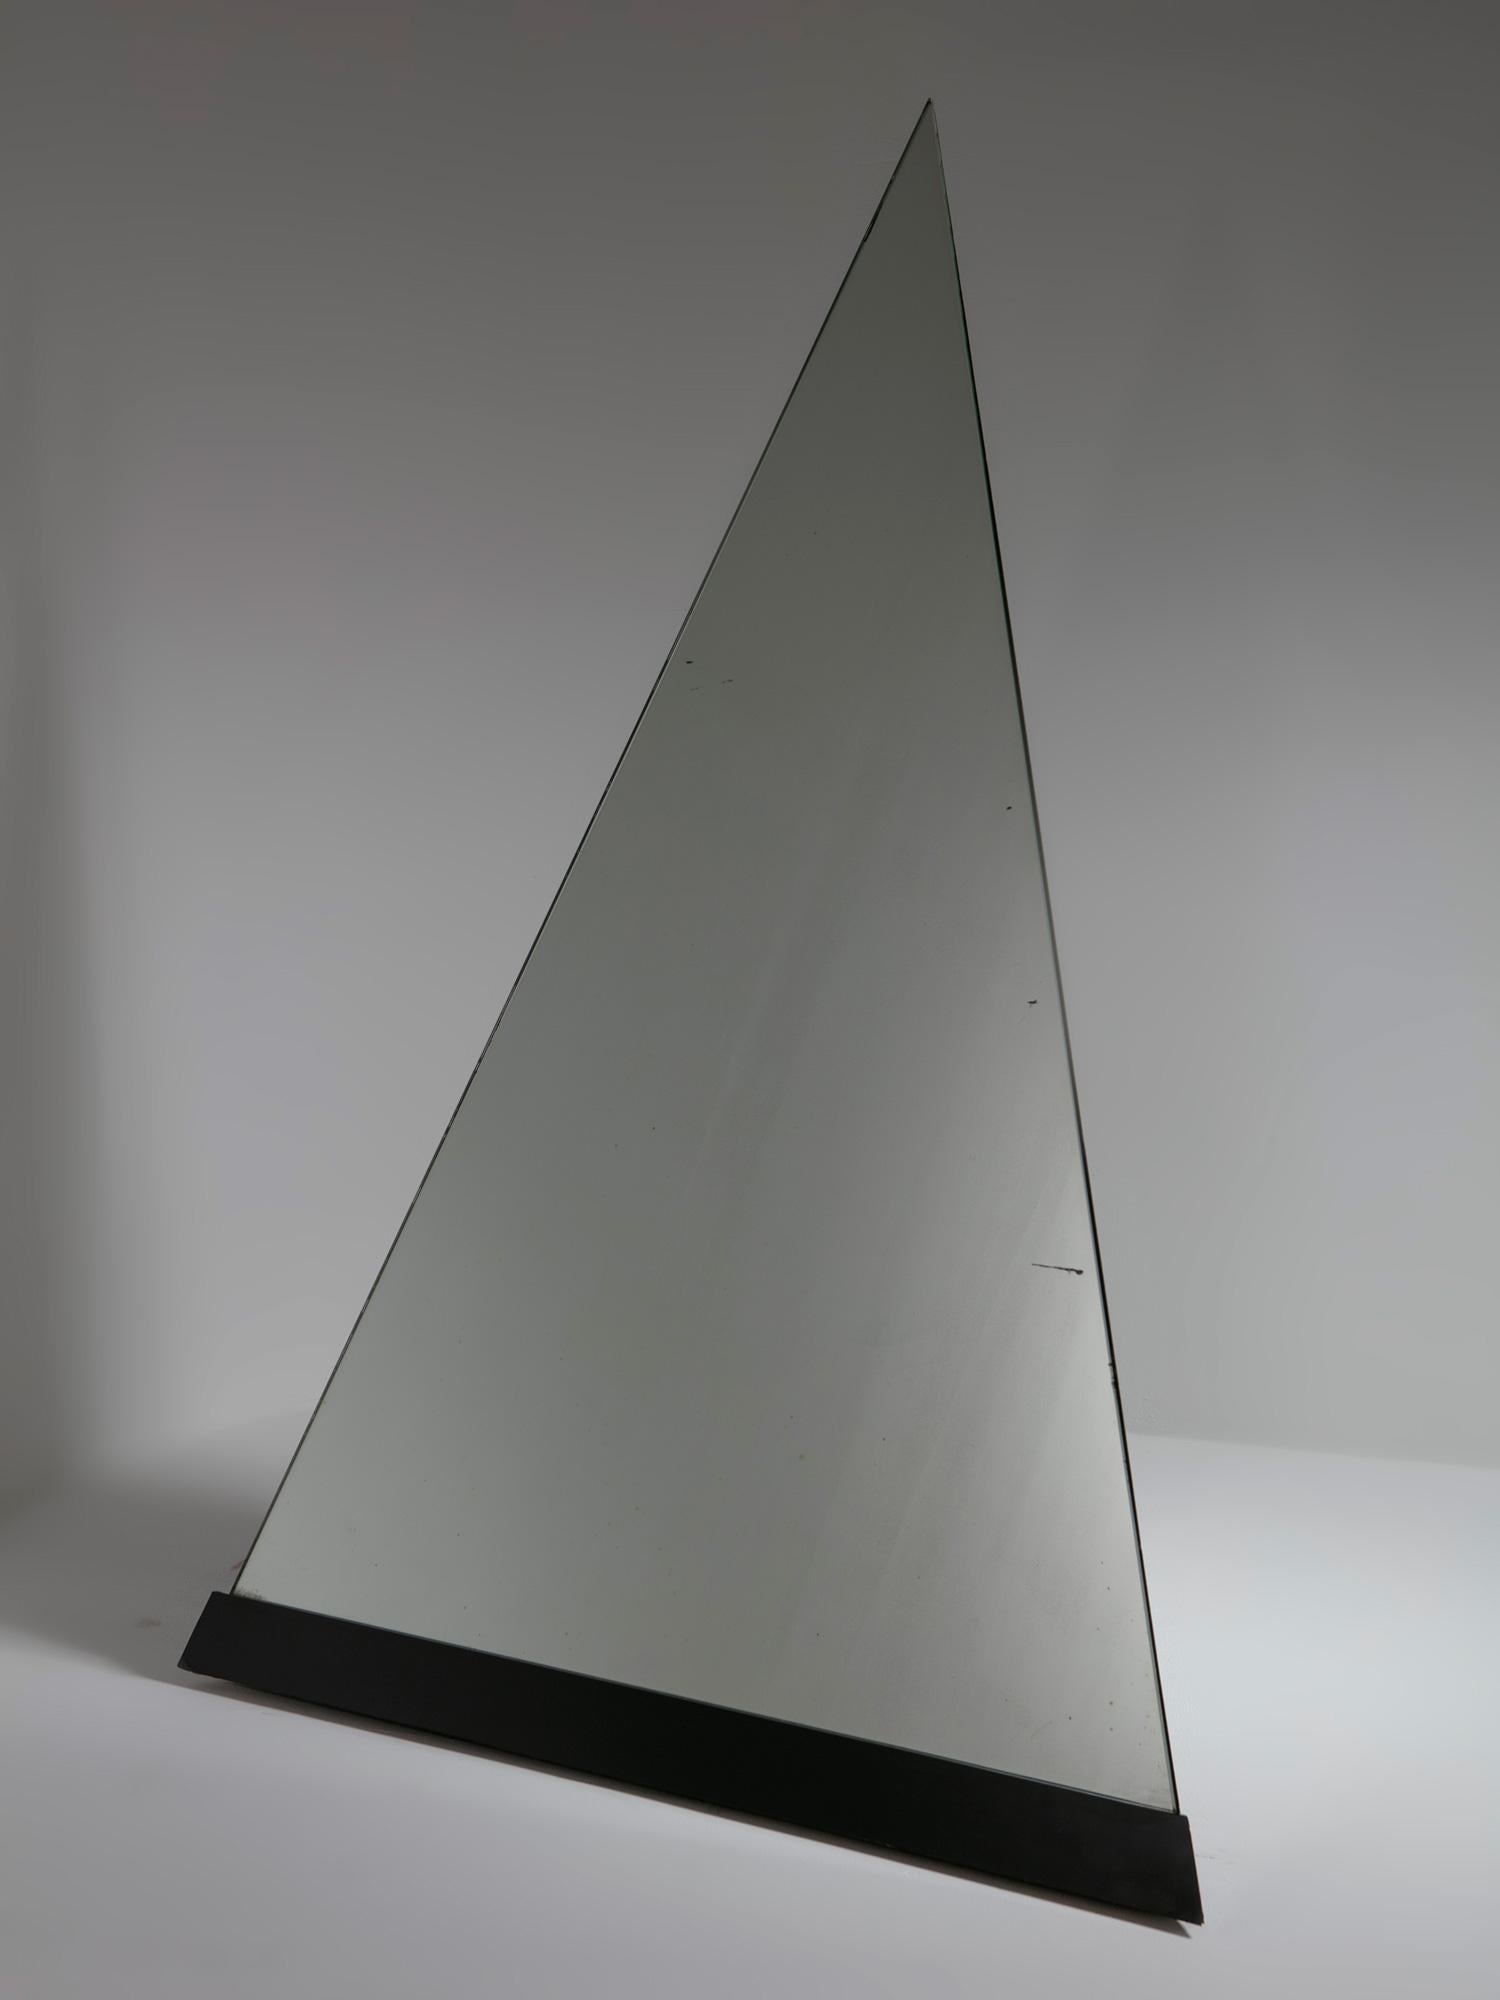 Rare miroir de sol Cheope par Giuseppe Raimondi pour Crystal Art.
Élément totémique composé de deux faces en stratifié noir et d'une surface inclinée en verre miroir.
Cette pièce peut être déplacée librement sur ses roues rotatives.